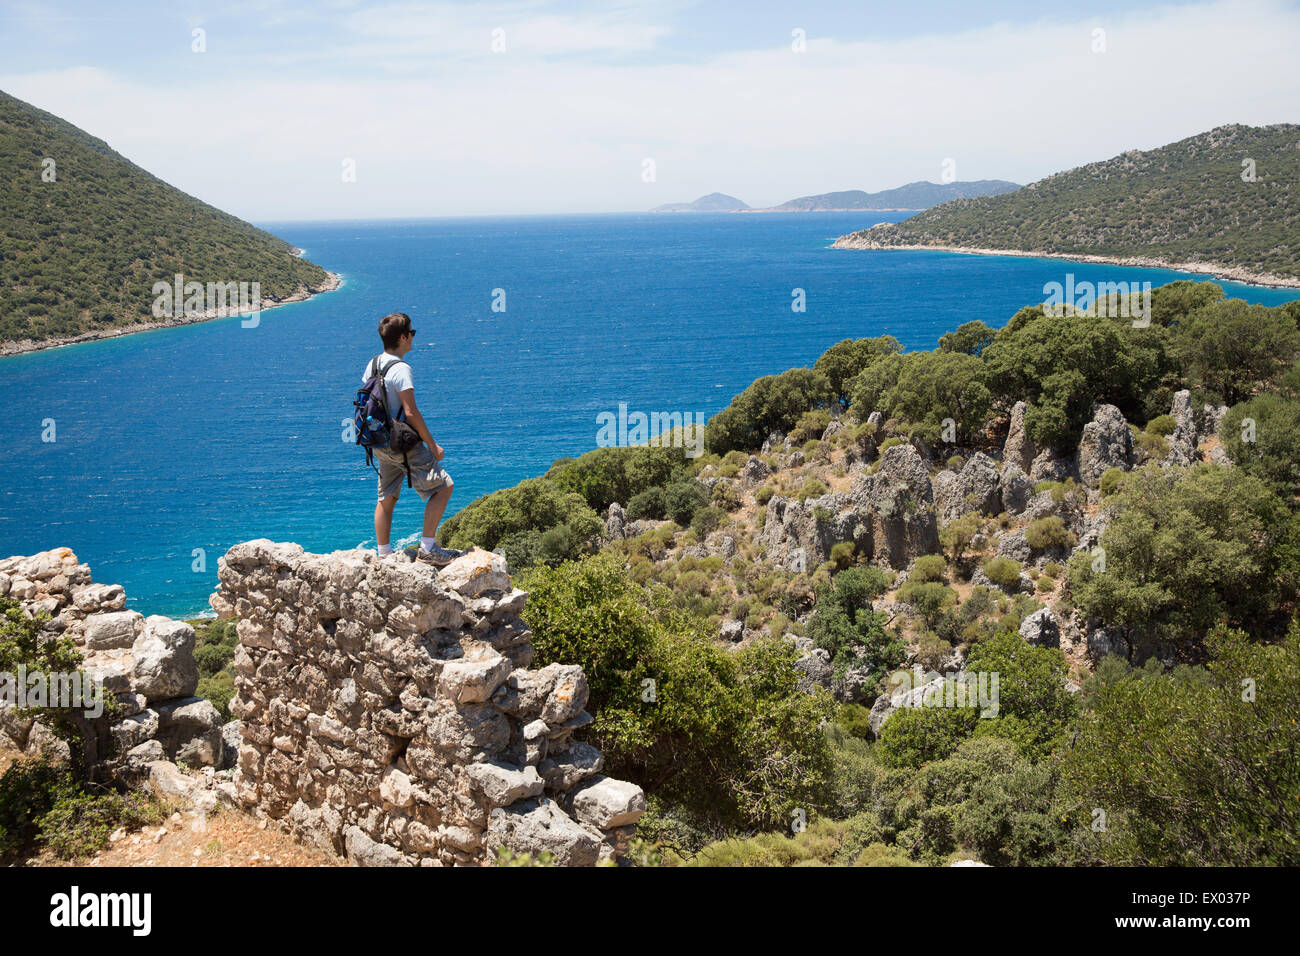 Man looking out à l'autre sur le chemin de Lycie, Turquie Banque D'Images